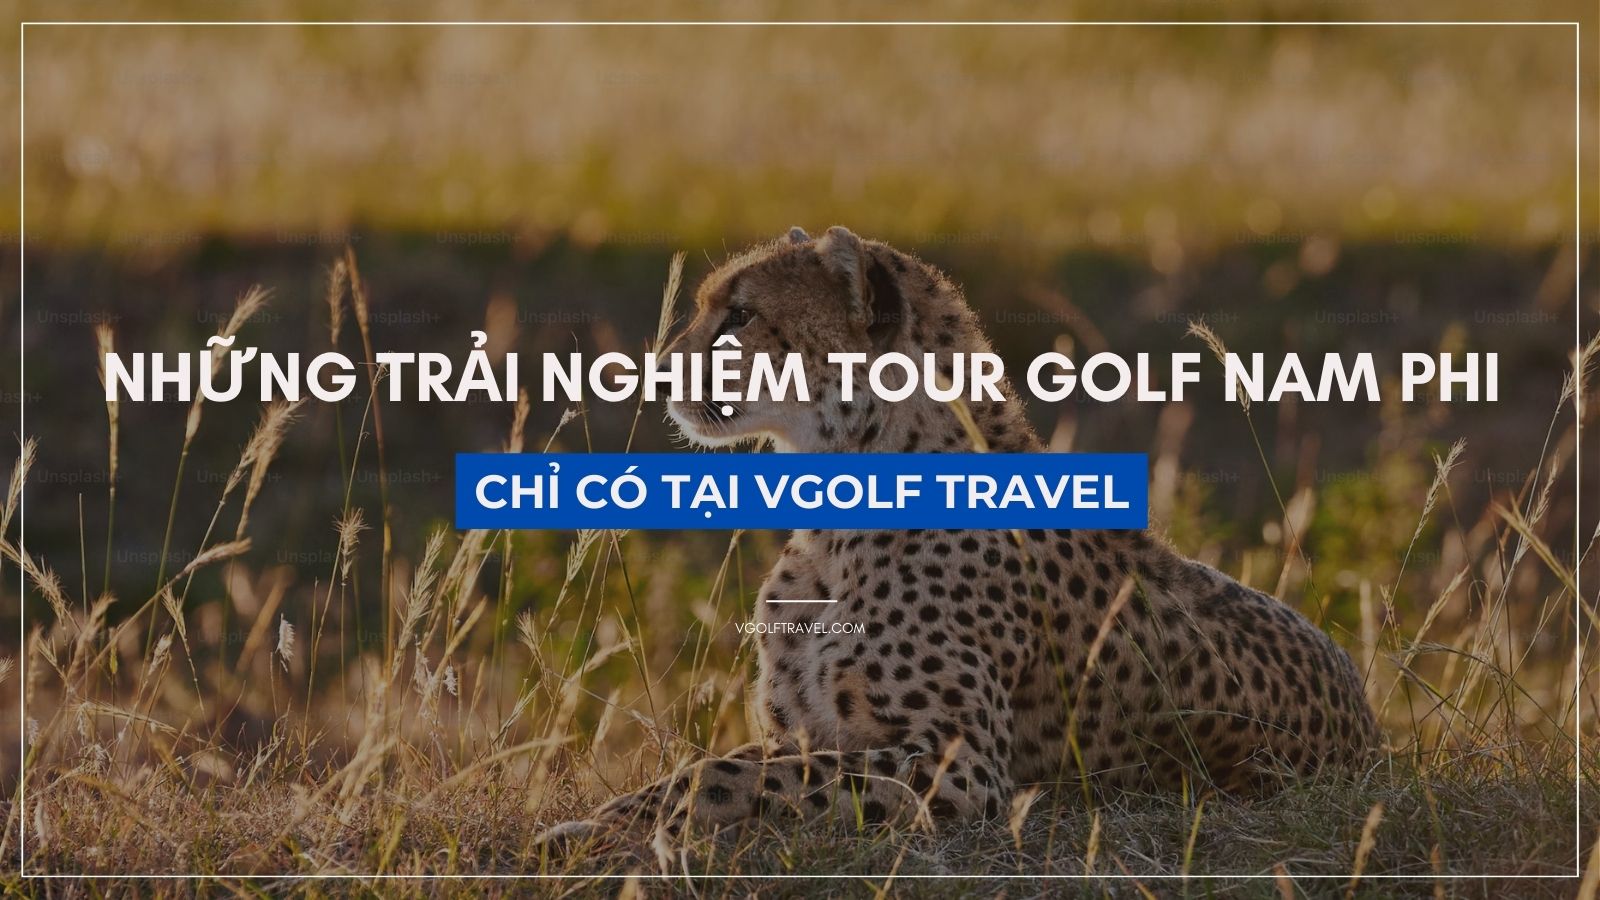 Fact: Những trải nghiệm tour golf Nam Phi chỉ có tại VGolf Travel